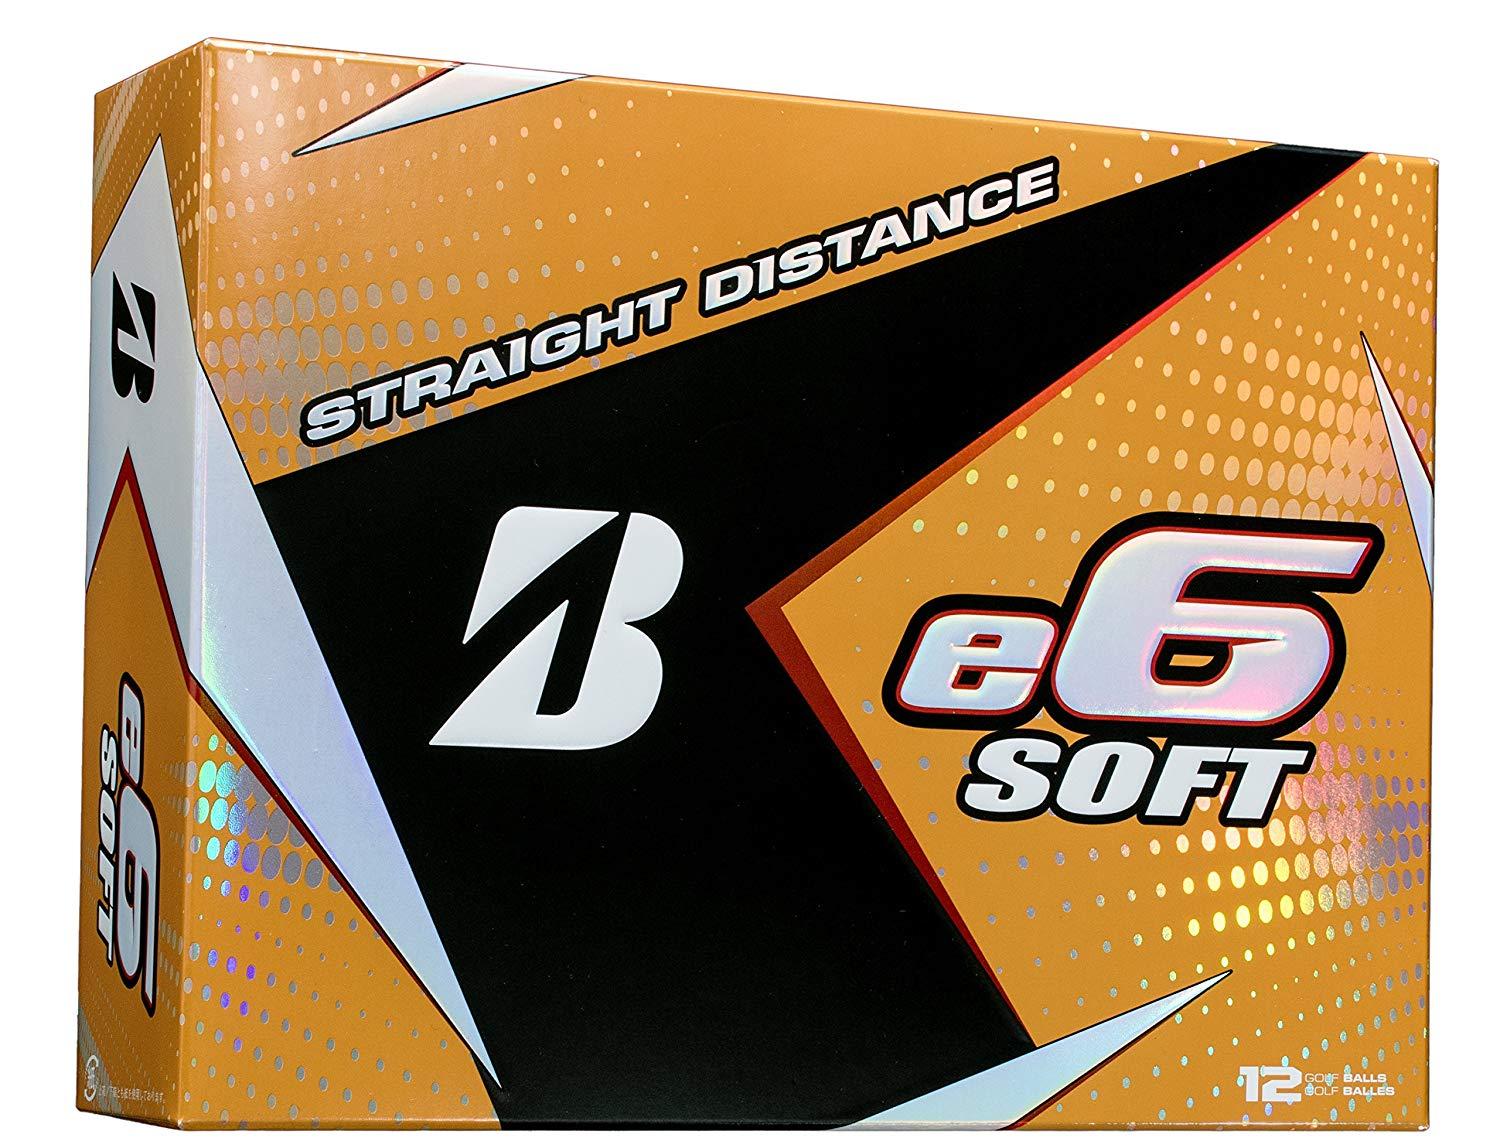 White Box with Orange B Logo - Amazon.com : BRIDGESTONE GOLF e6 SOFT Golf Balls, White, Soft (Dozen ...